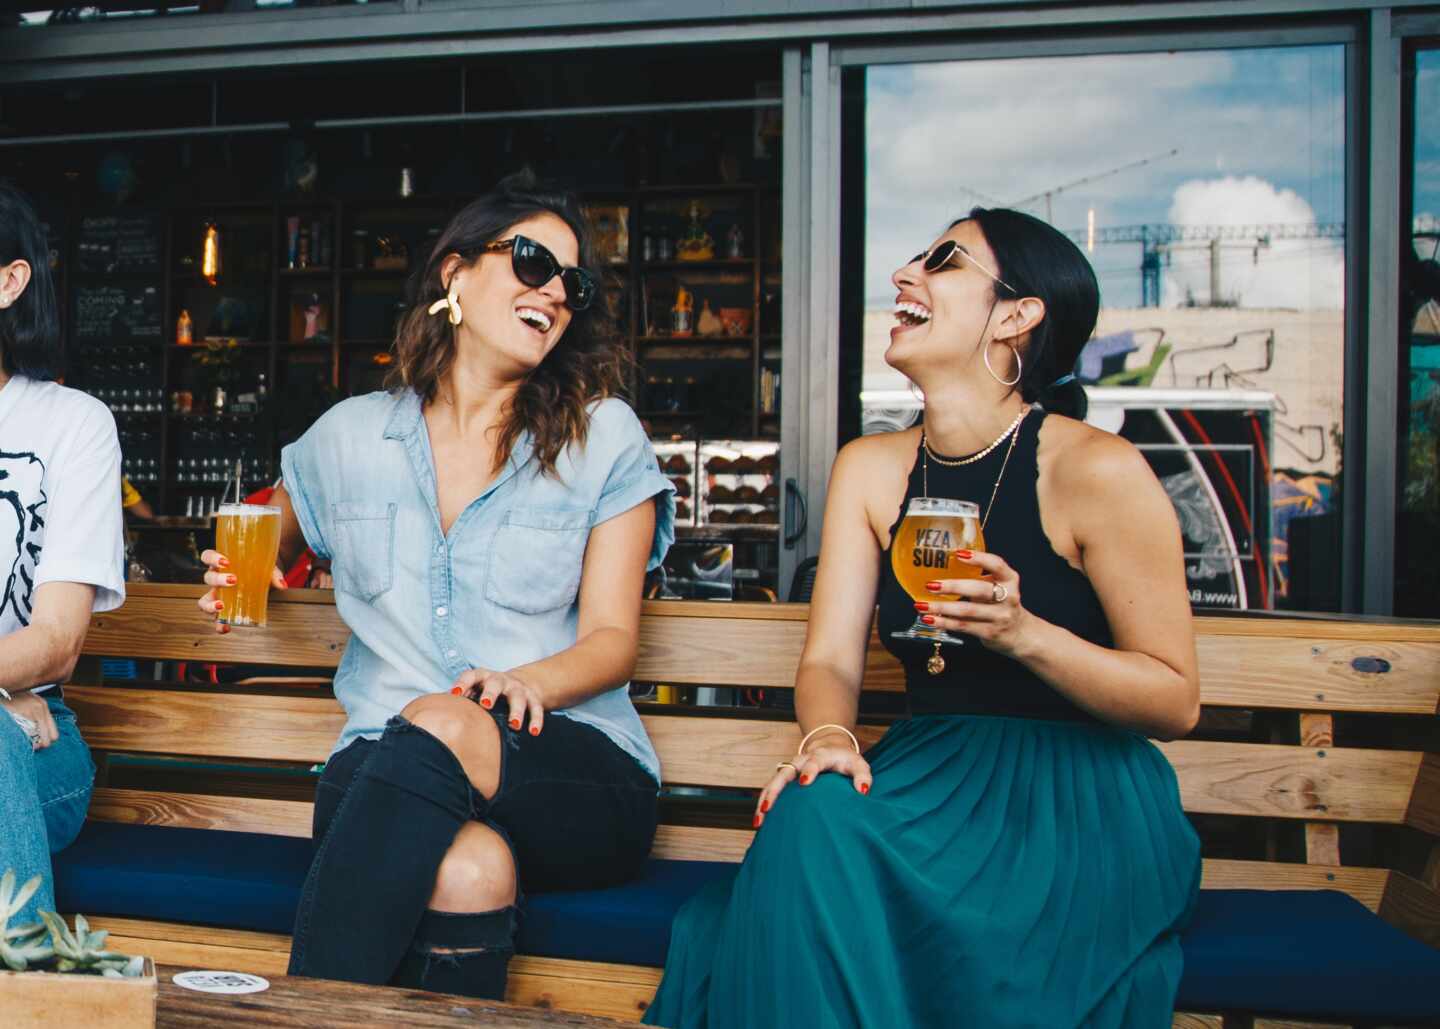 Gastrofestival Marid 2021: dos mujeres tomando cerveza en una terraza